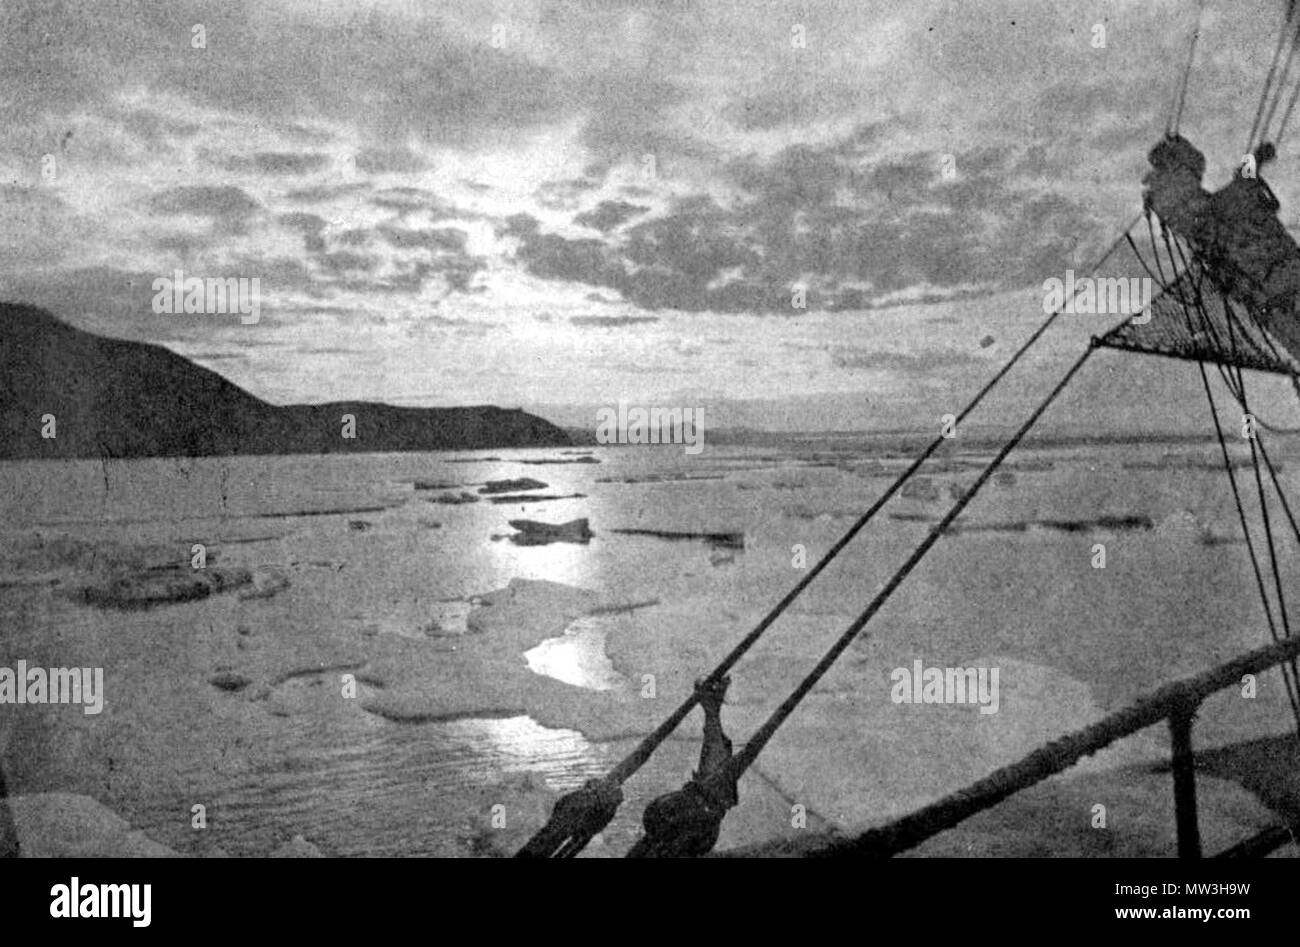 . Englisch: Eine arktische Morgen. 25. Juli 2011. Von einem Foto aus Cape Serdzekamen, Sibirien, von Dr. William J. Hamilton 462 Seite 97 - Kreuzfahrt von corwin Stockfoto